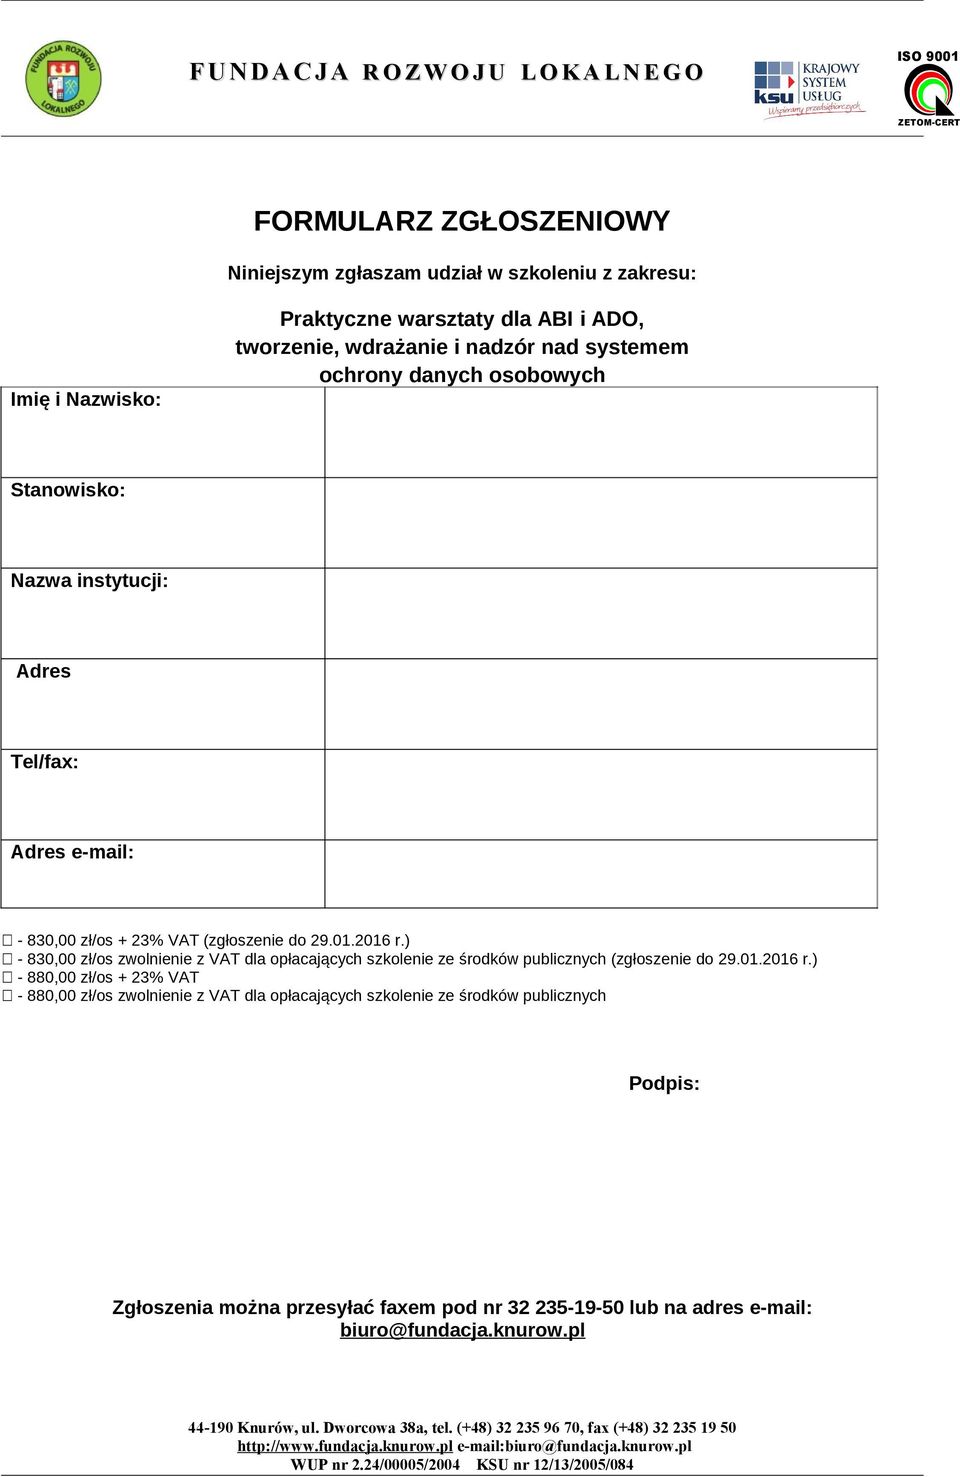 ) - 830,00 zł/os zwolnienie z VAT dla opłacających szkolenie ze środków publicznych (zgłoszenie do 29.01.2016 r.